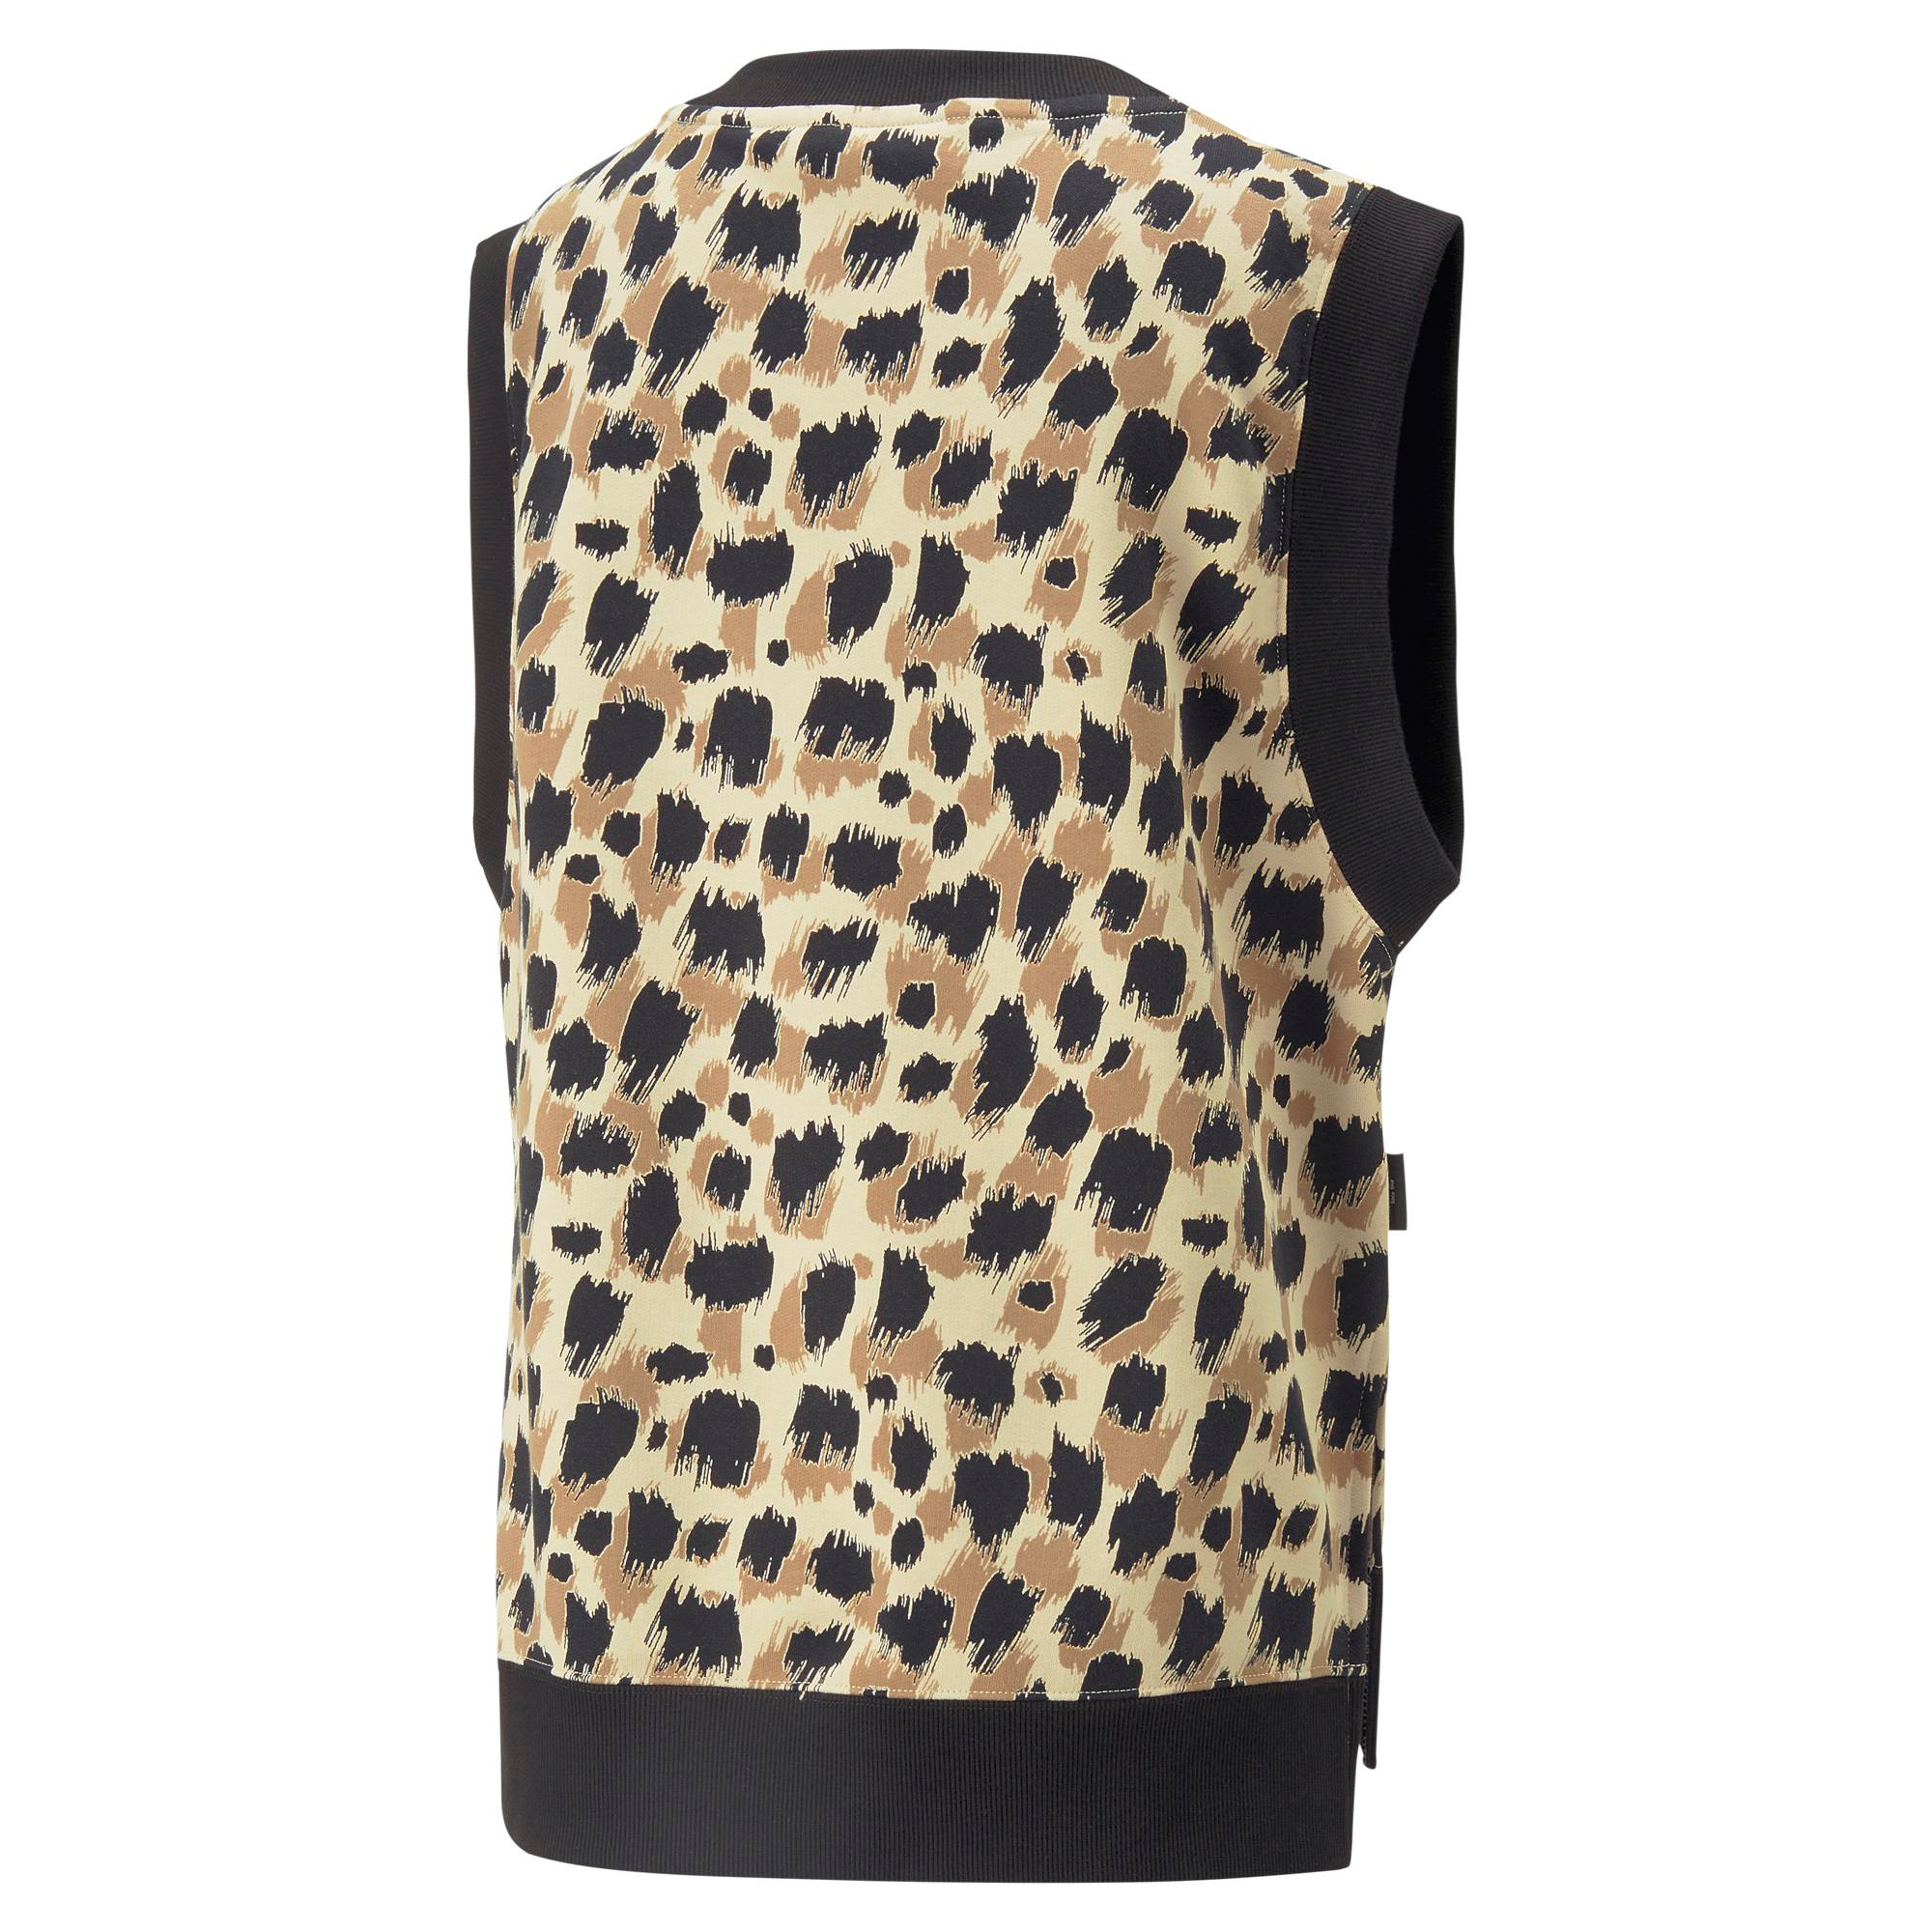 Puma - Animal print cotton vest, Animal, large image number 1